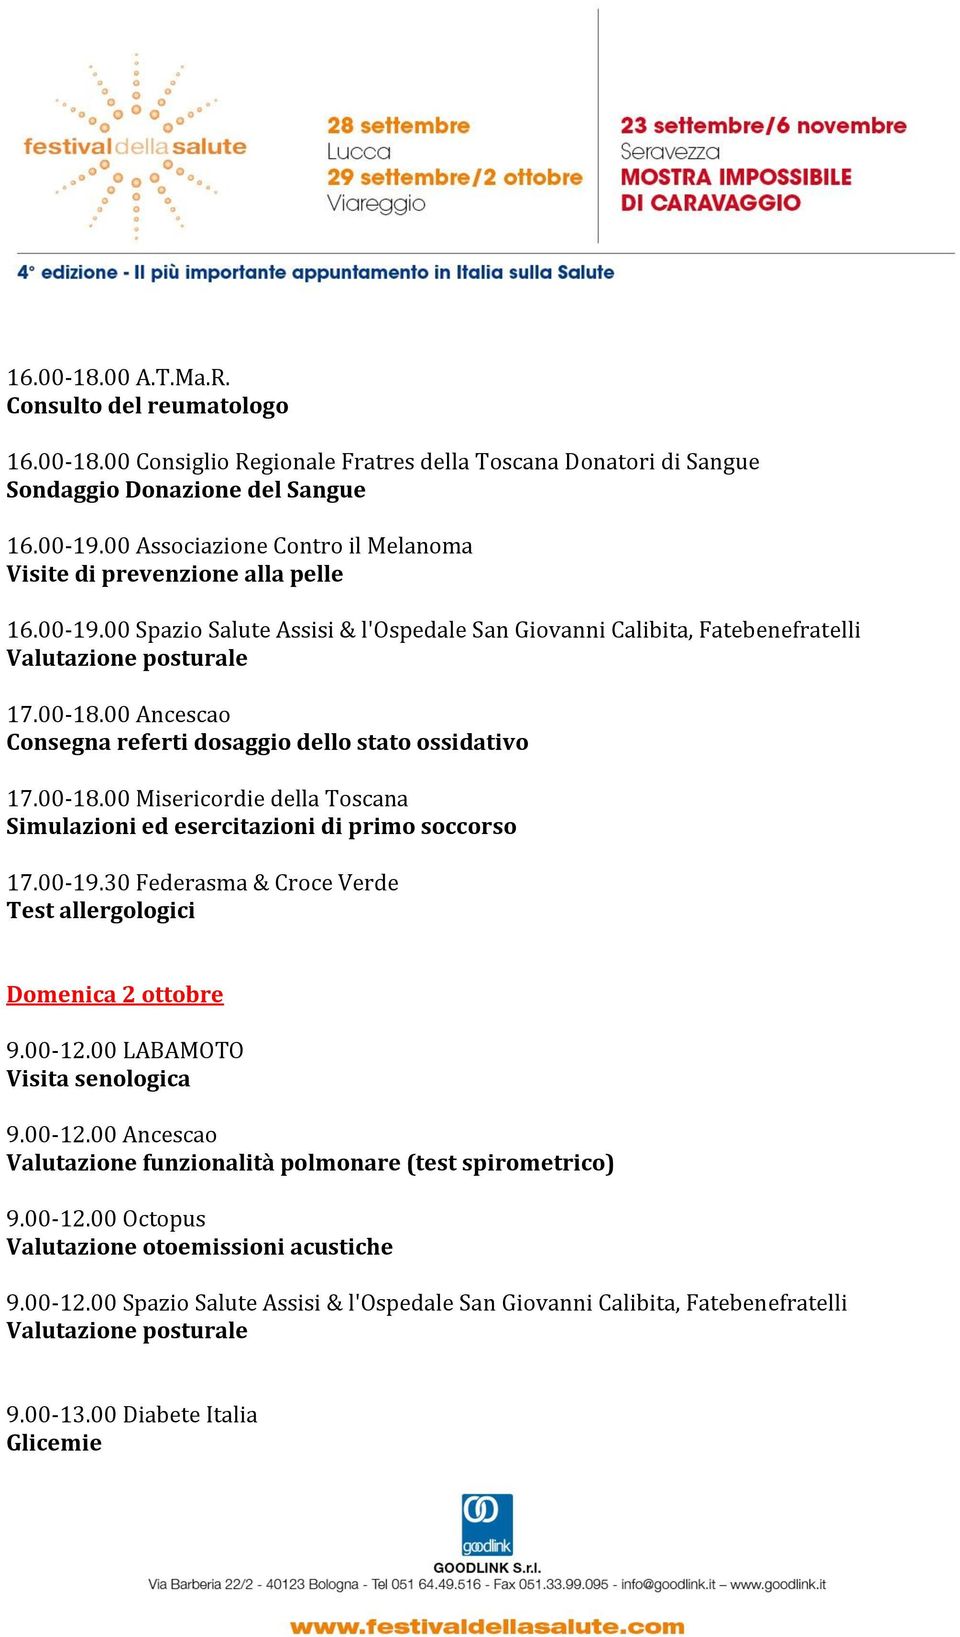 00 Ancescao Consegna referti dosaggio dello stato ossidativo 17.00-18.00 Misericordie della Toscana 17.00-19.30 Federasma & Croce Verde Domenica 2 ottobre Visita senologica 9.